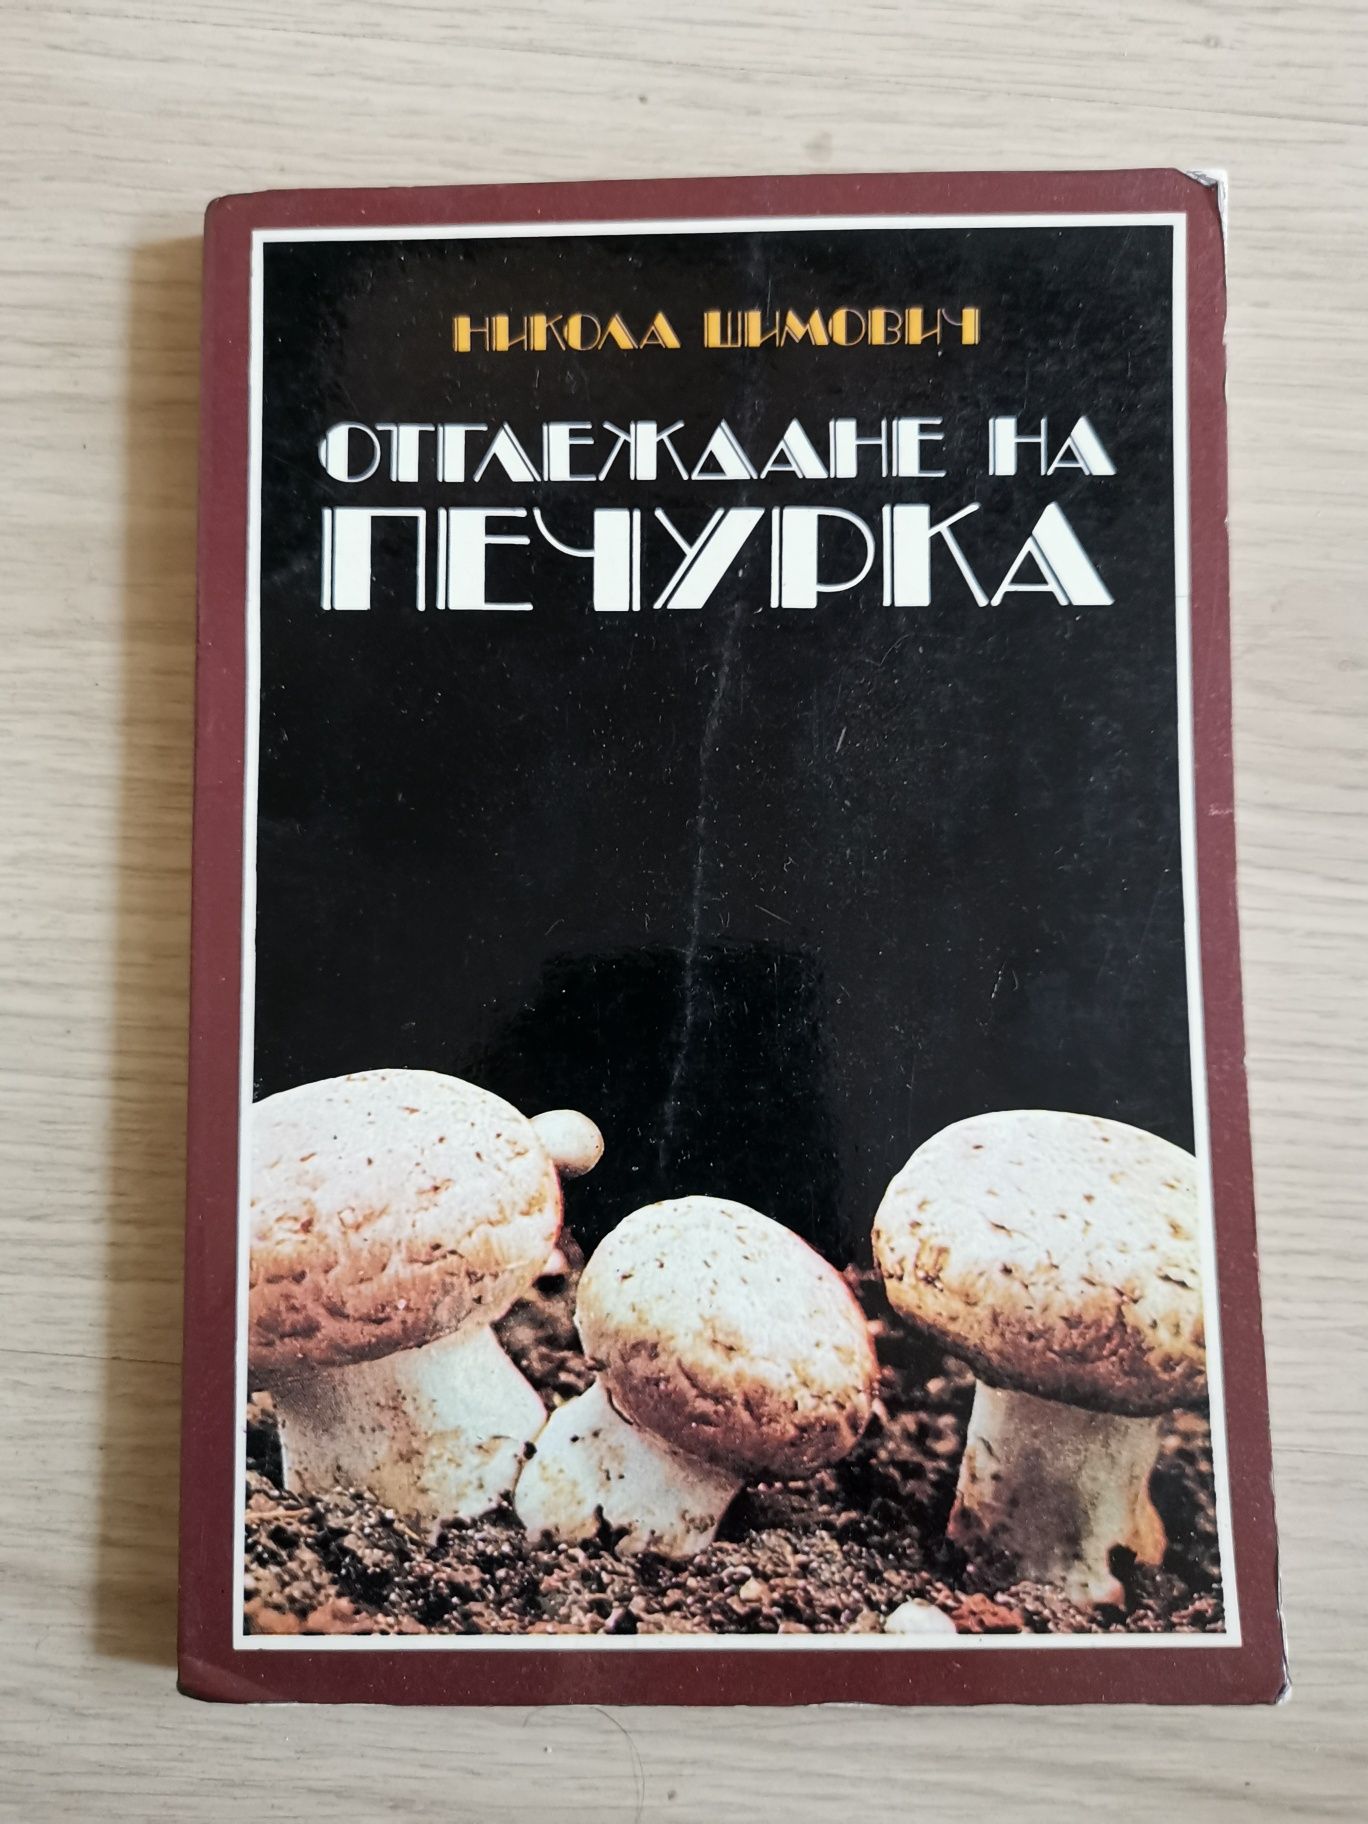 Отглеждане на печурка - Никола Шимович